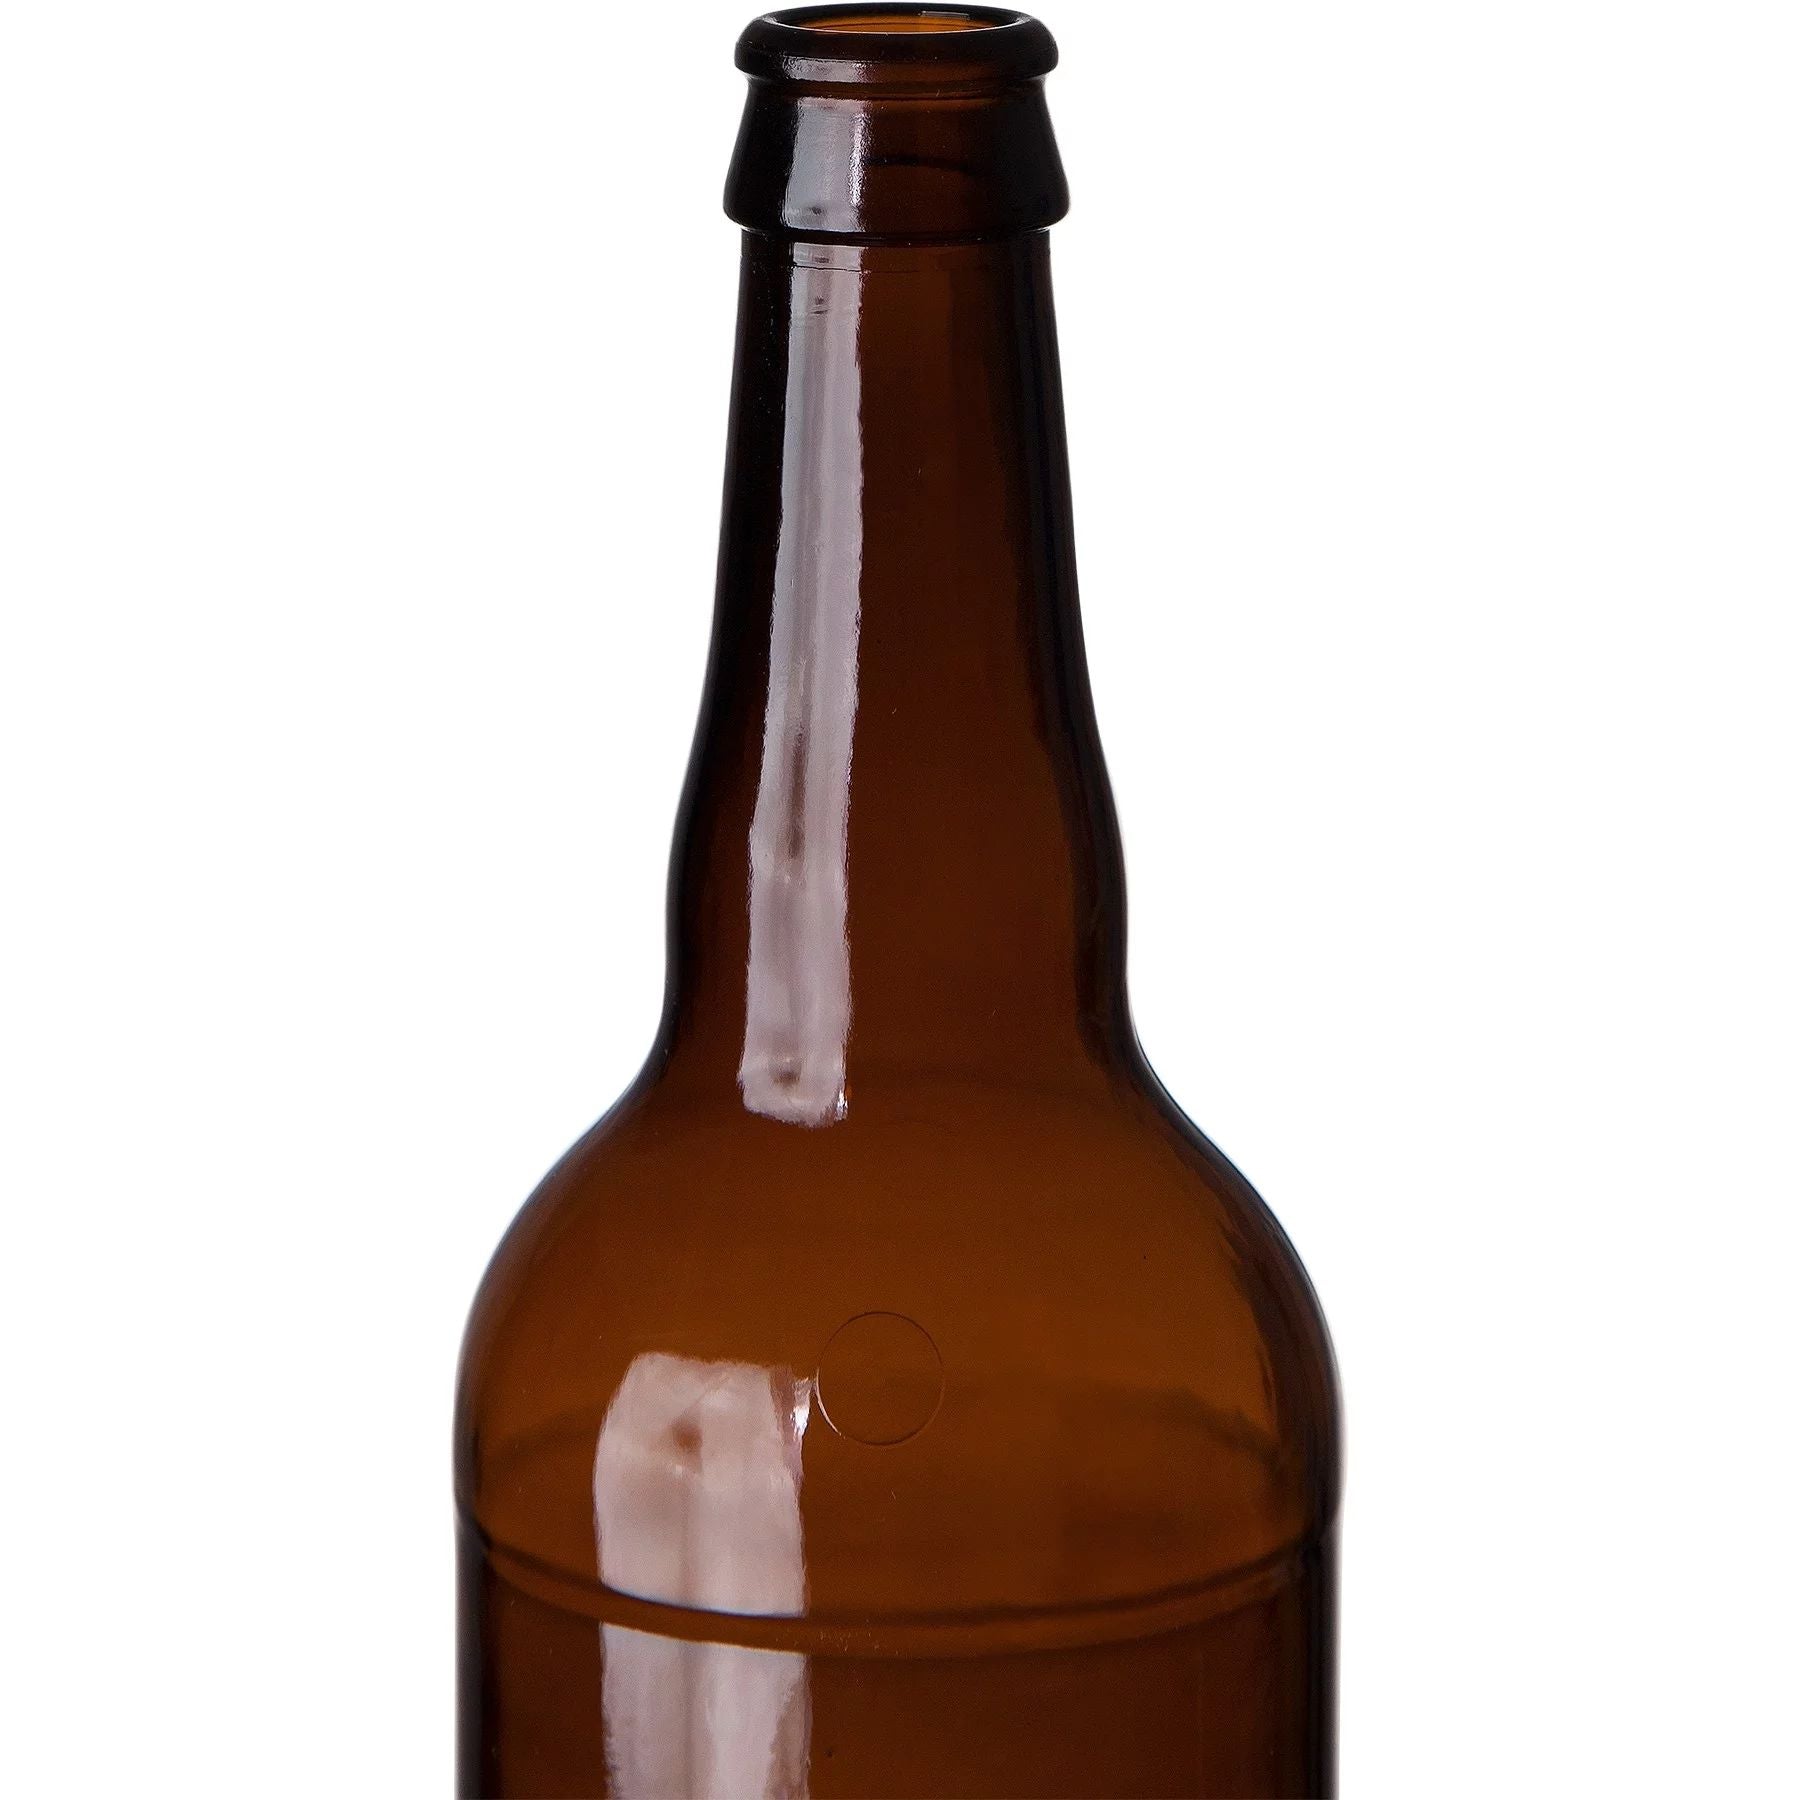 B-22 Bomber Pop Premium 22 oz beer bottle Insulator